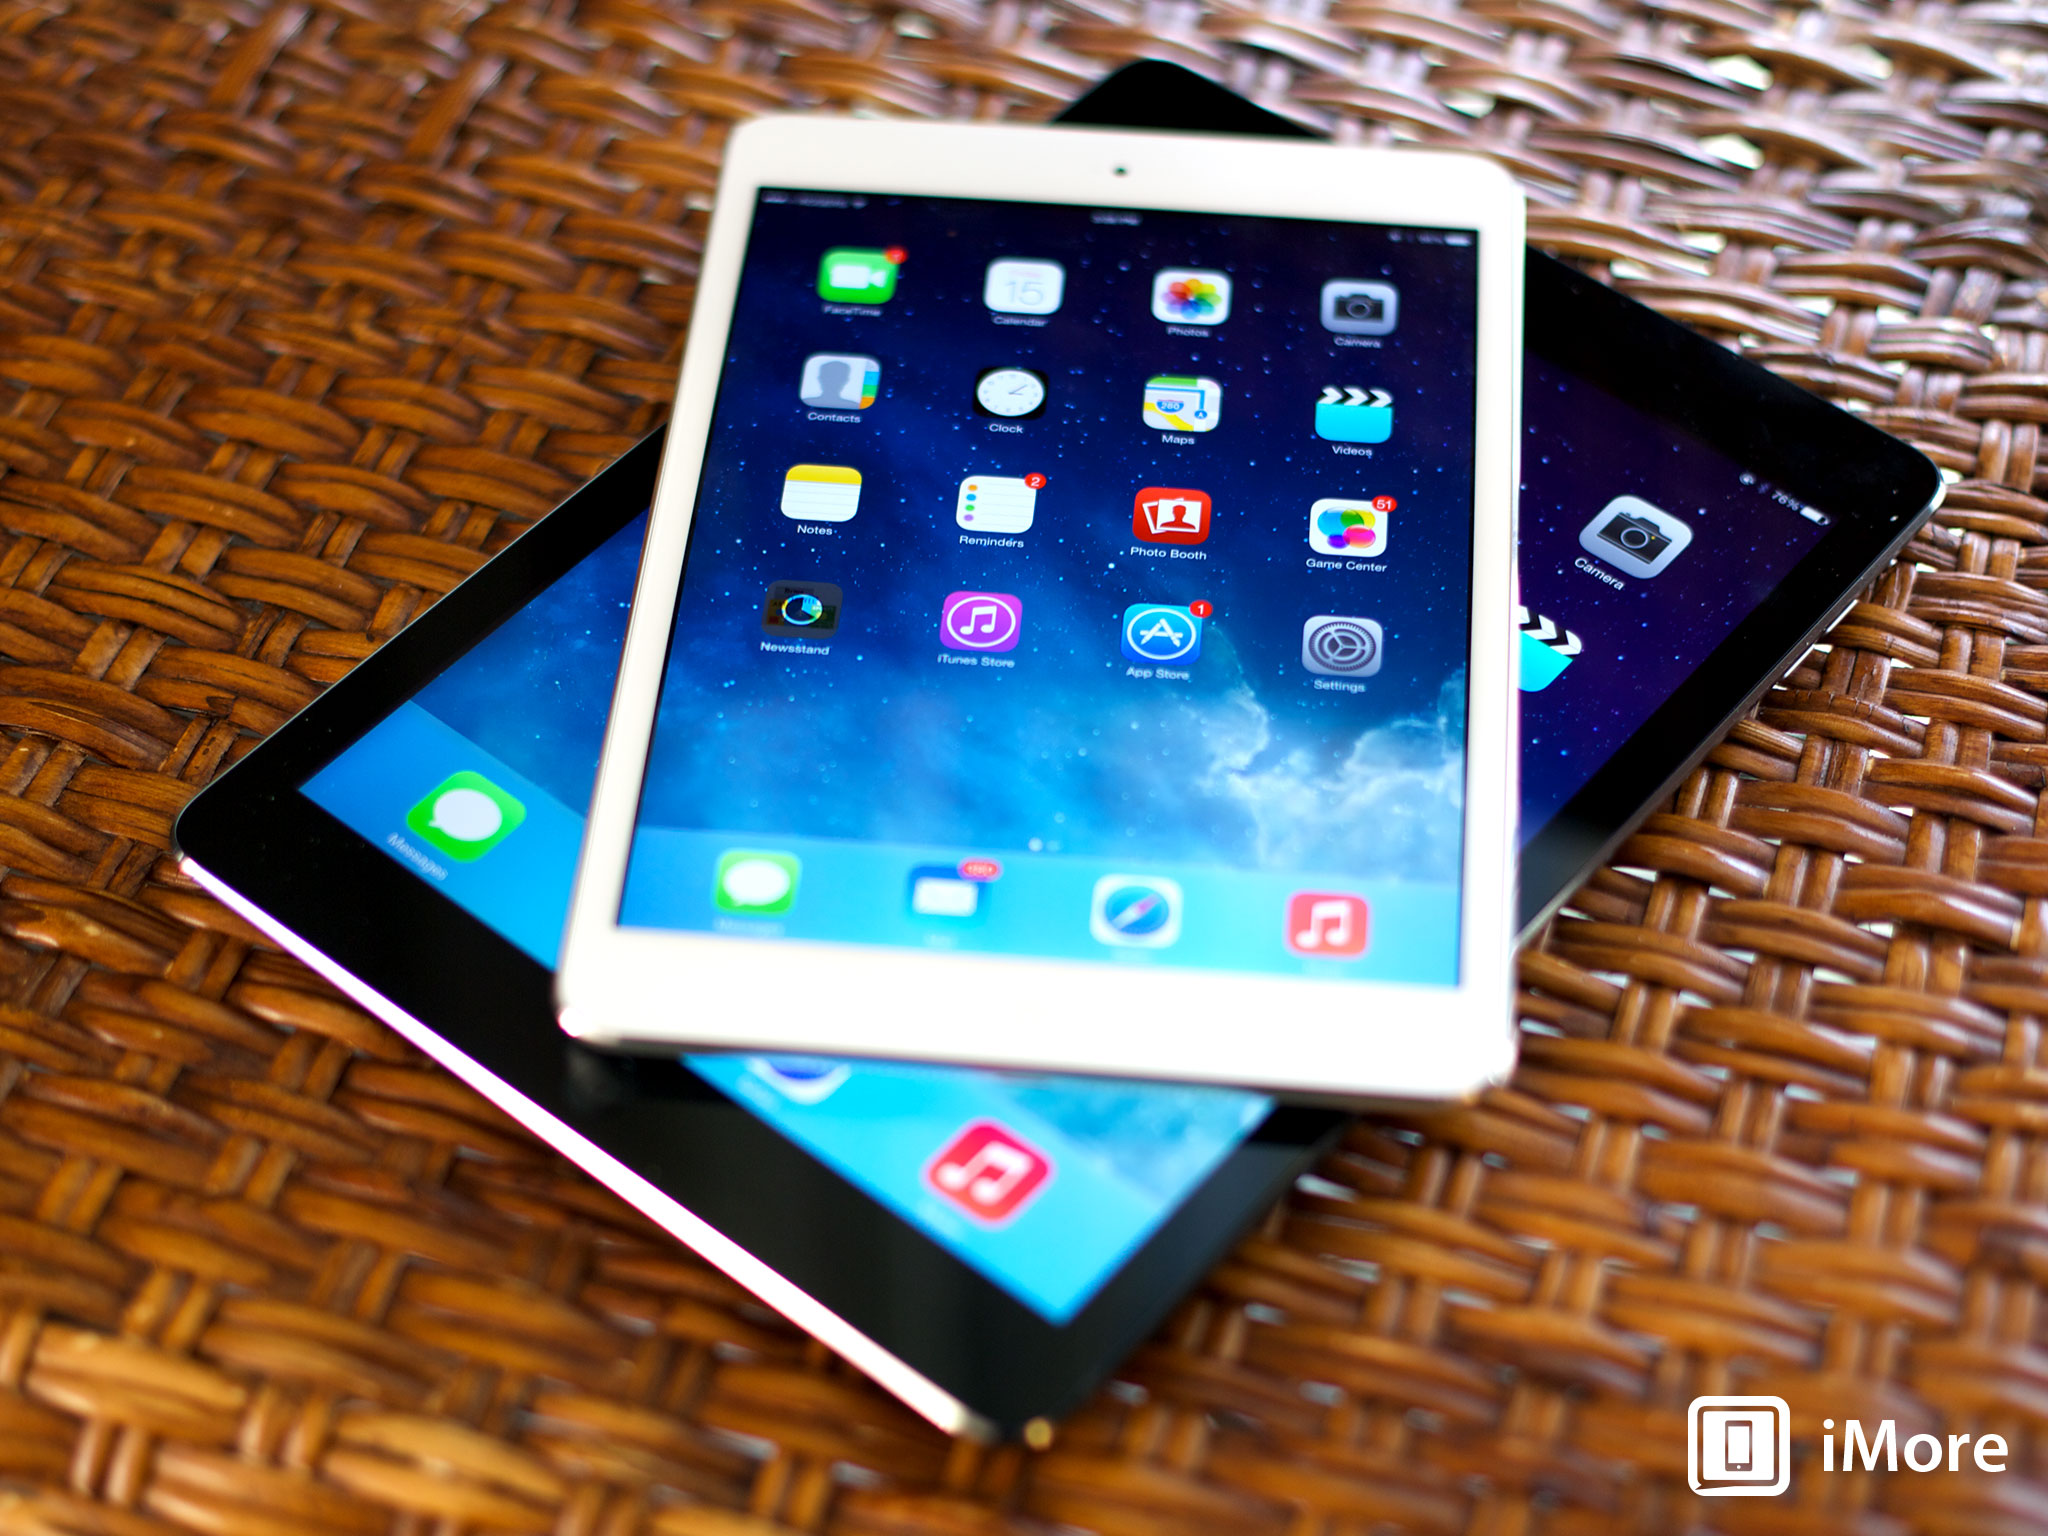 iPad and iPad mini